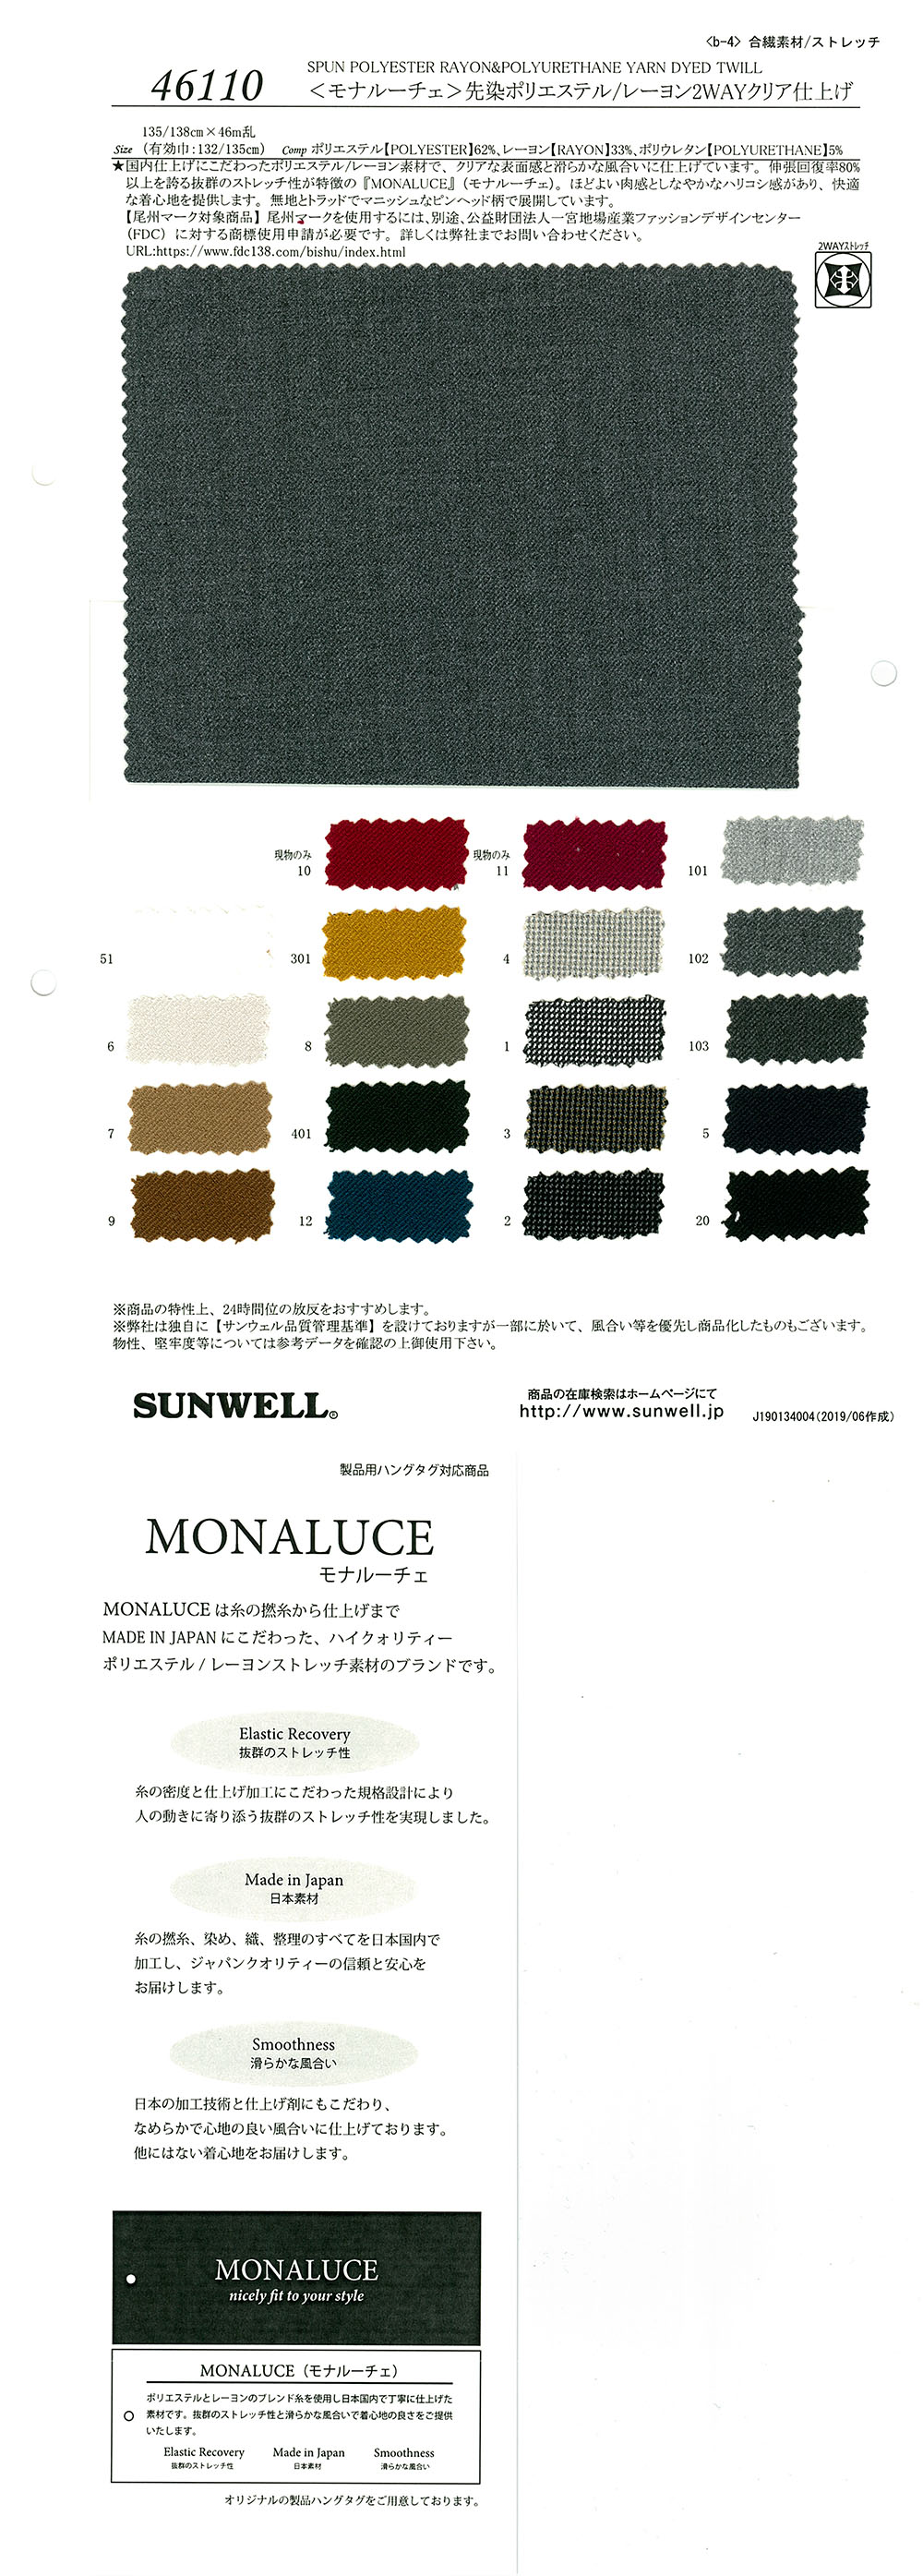 46110 <Monaluche> 色織聚酯纖維/人造絲 2 路透明精加工[面料] SUNWELL